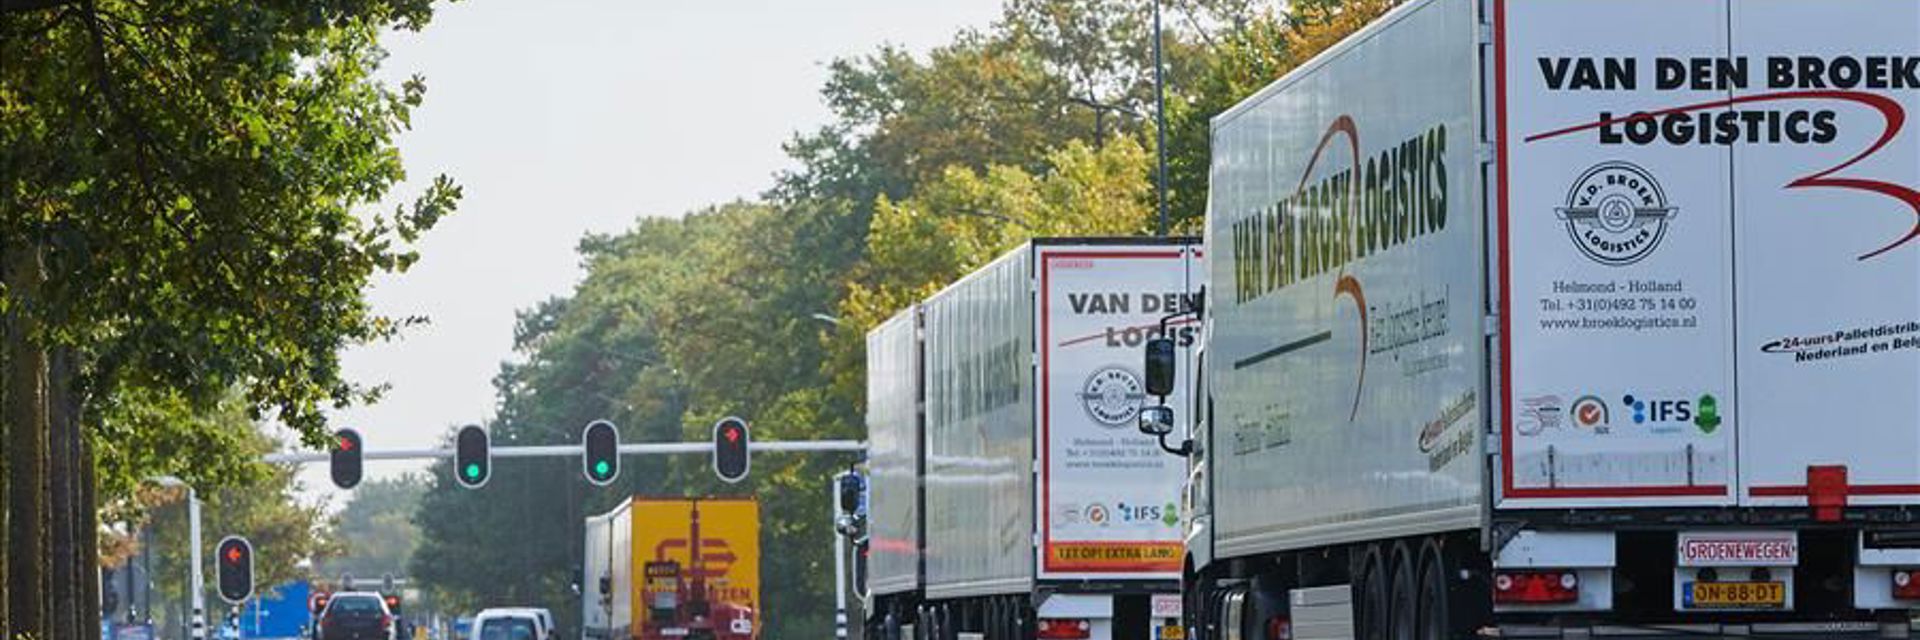 Stadslogistiek Logistiek Vrachtwagen Verkeerslichten